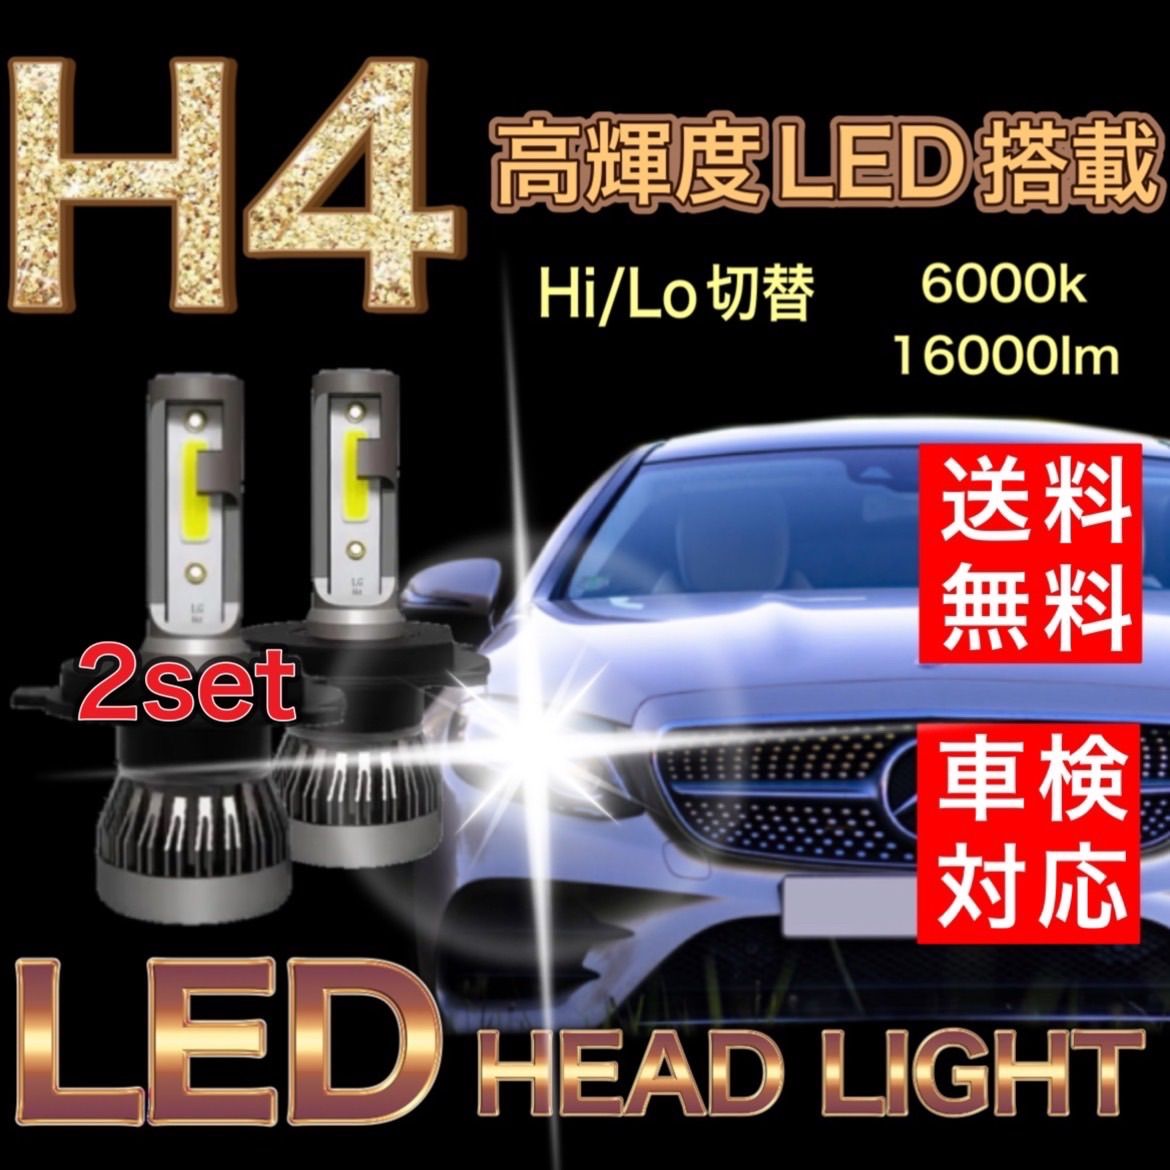 2年保証 送料無料 スズキ スカイウェイブ 250 400 CJ44A CJ45A CJ46A CK43A CK45A BrightRay LED ヘッドライト H4 Hi/Lo 6000K 車検対応